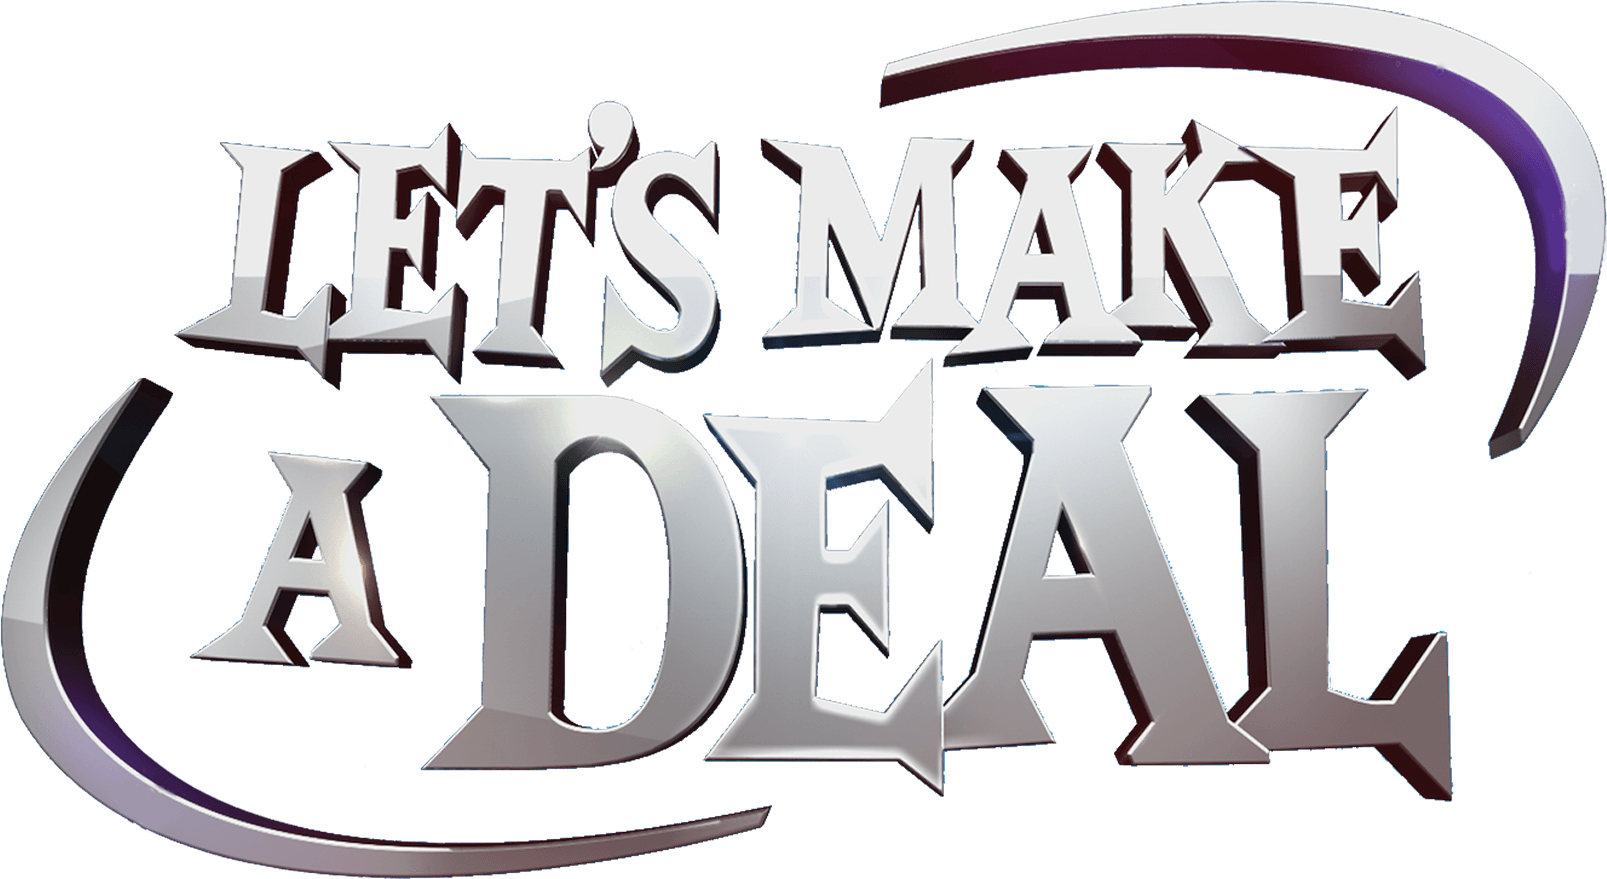 Let's Make a Deal logo